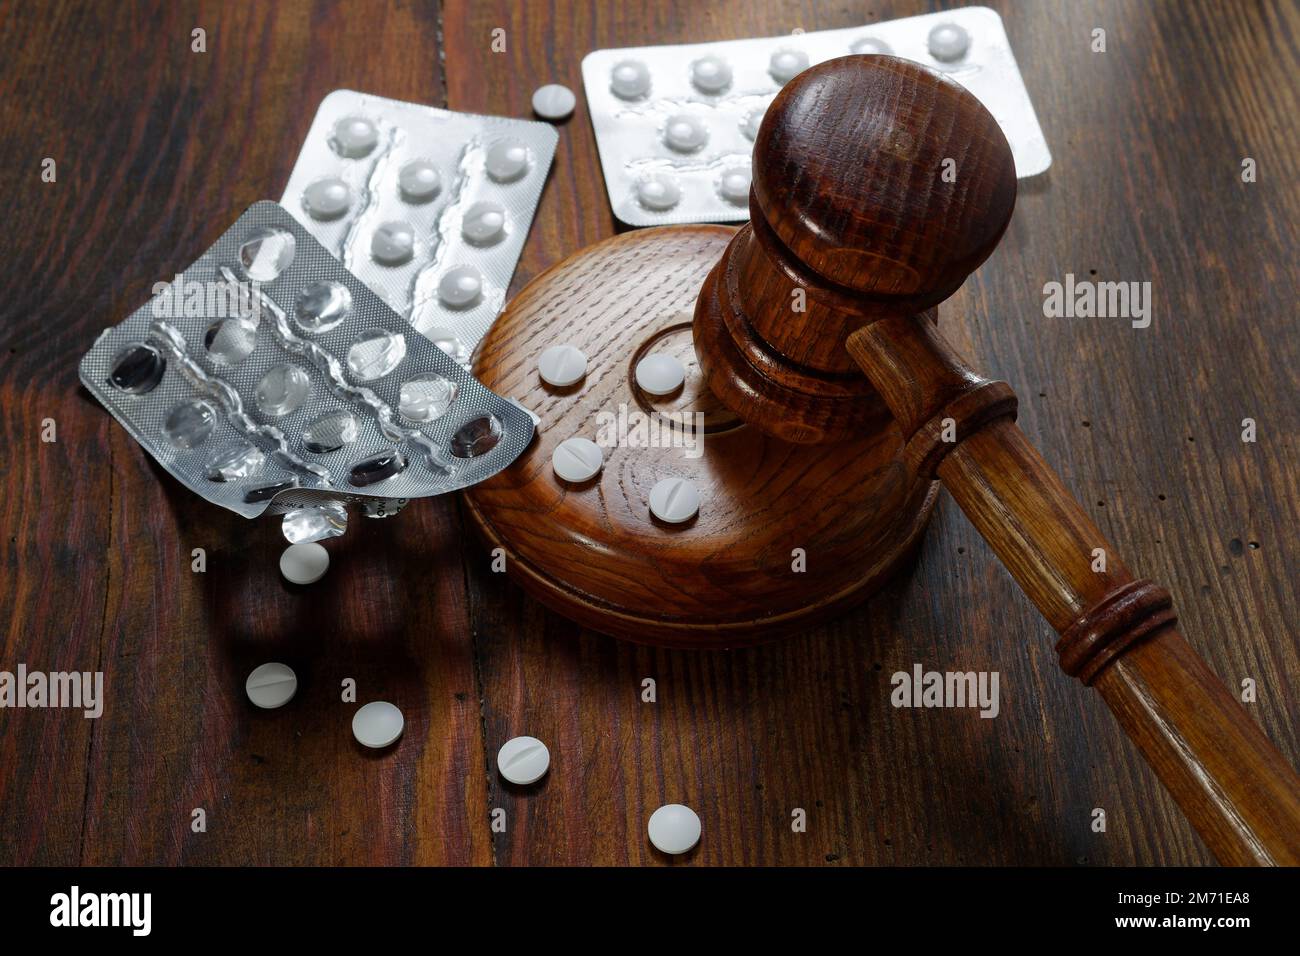 Droit en médecine. Jugez le gavel et les pilules sur un fond en bois. Concept de droit médical et de crimes médicaux Banque D'Images